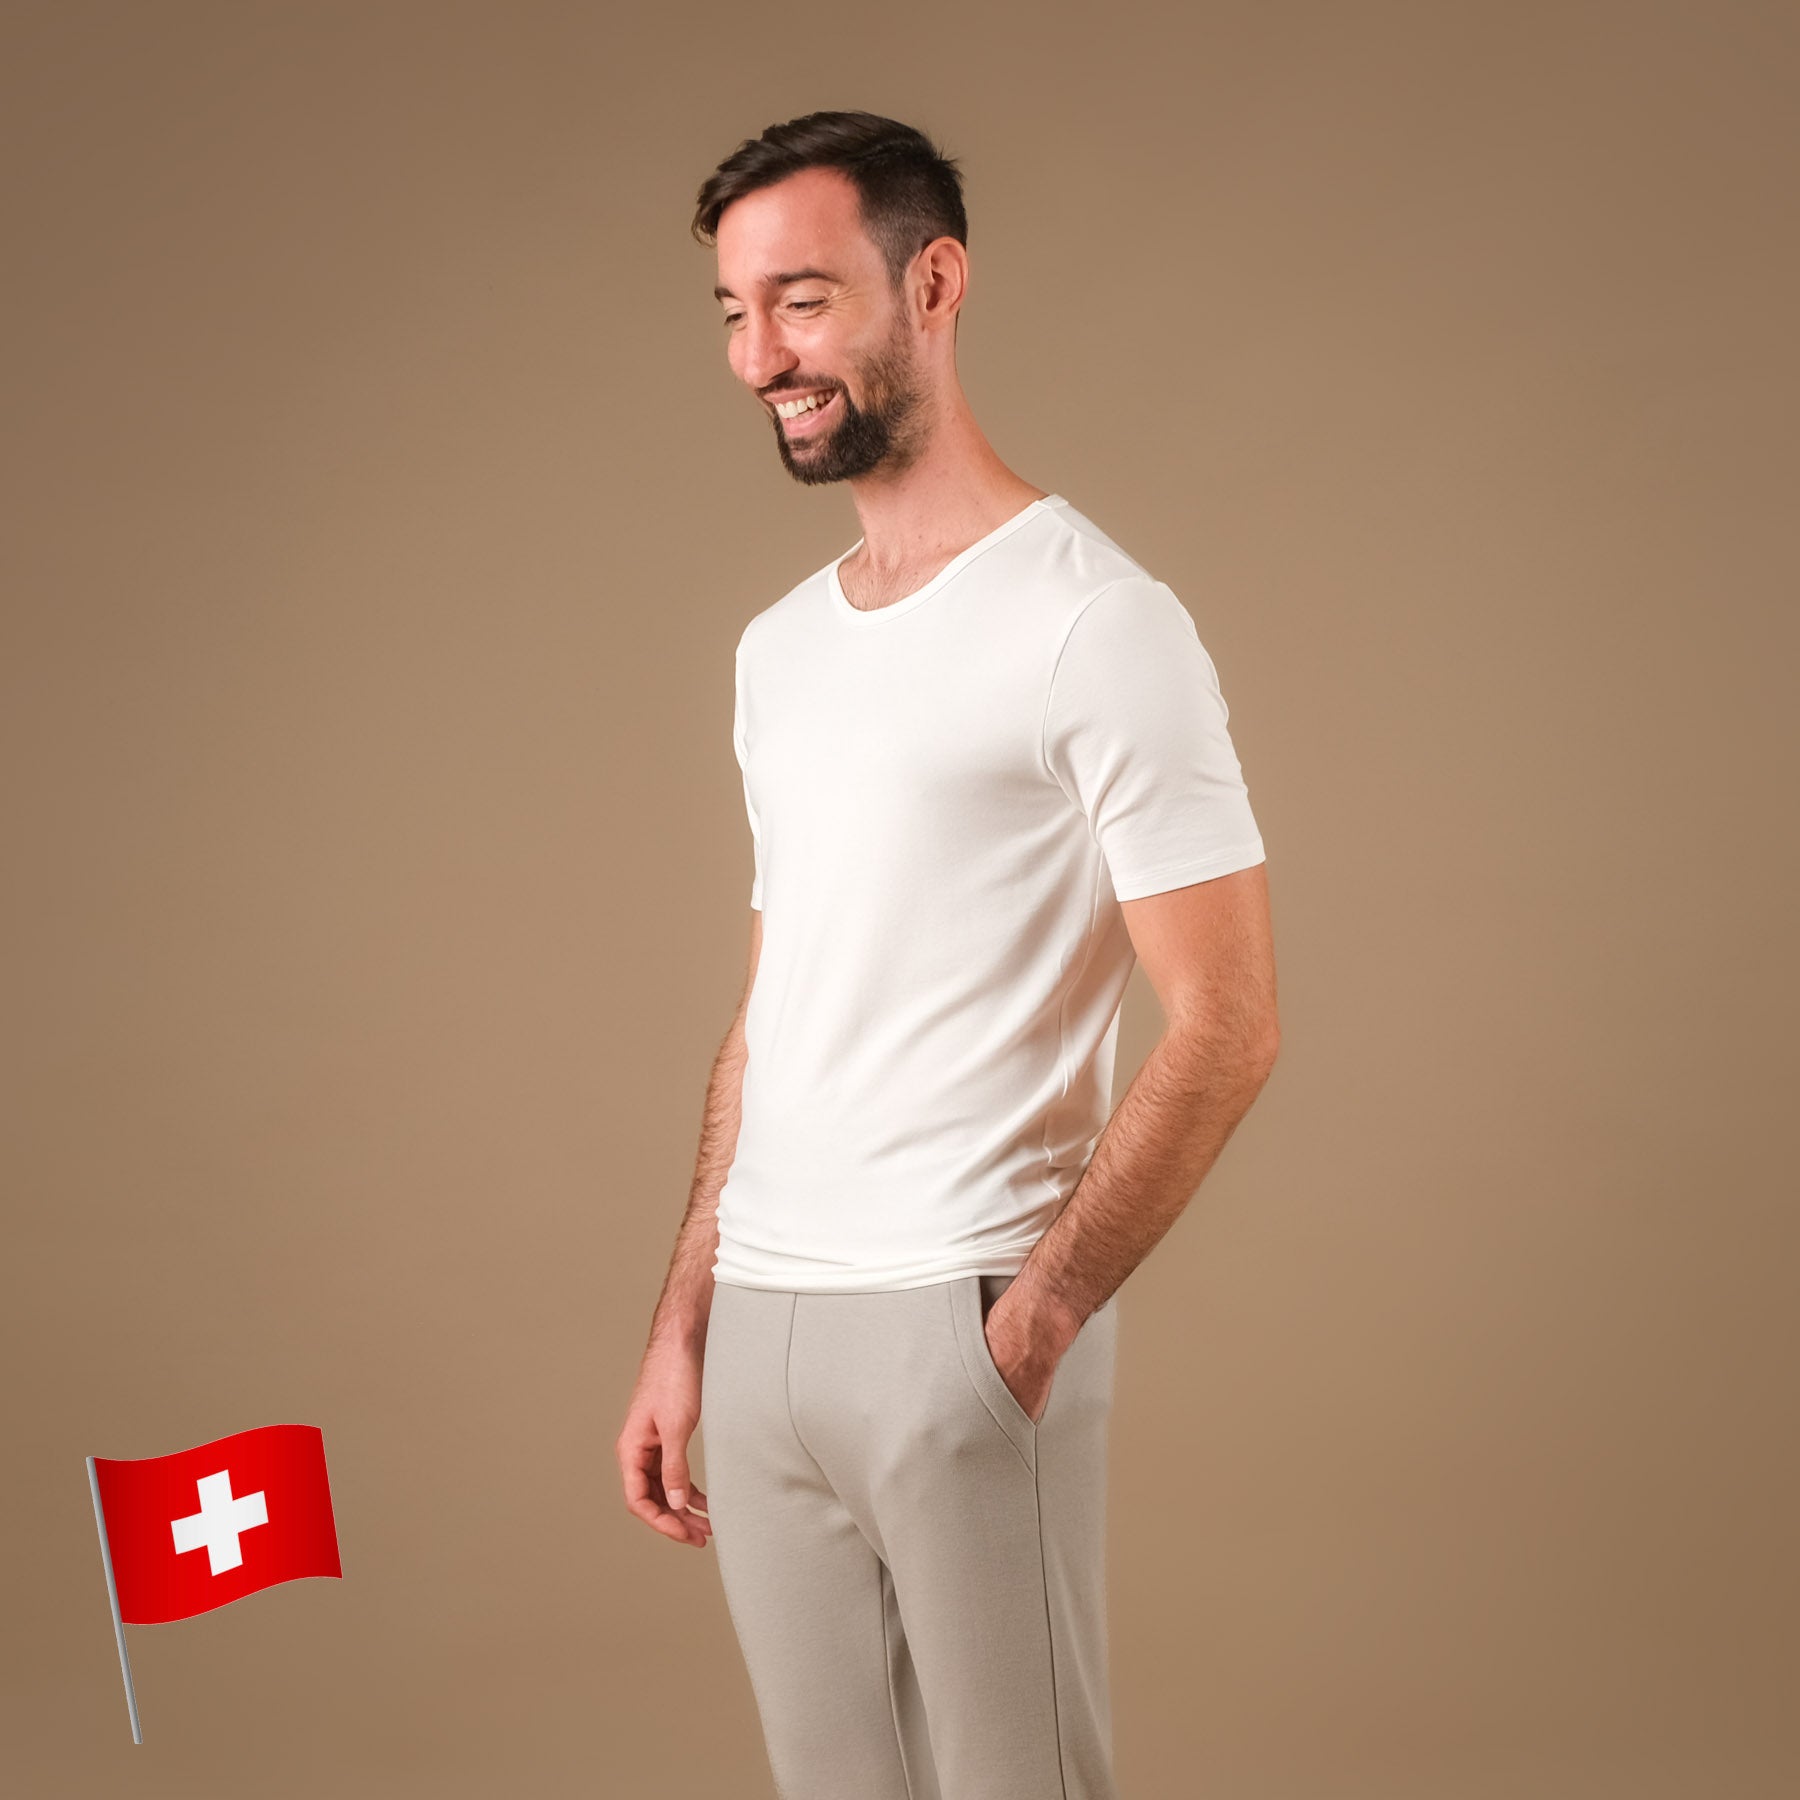 Shirt de yoga pour hommes Classy à manches courtes blanc